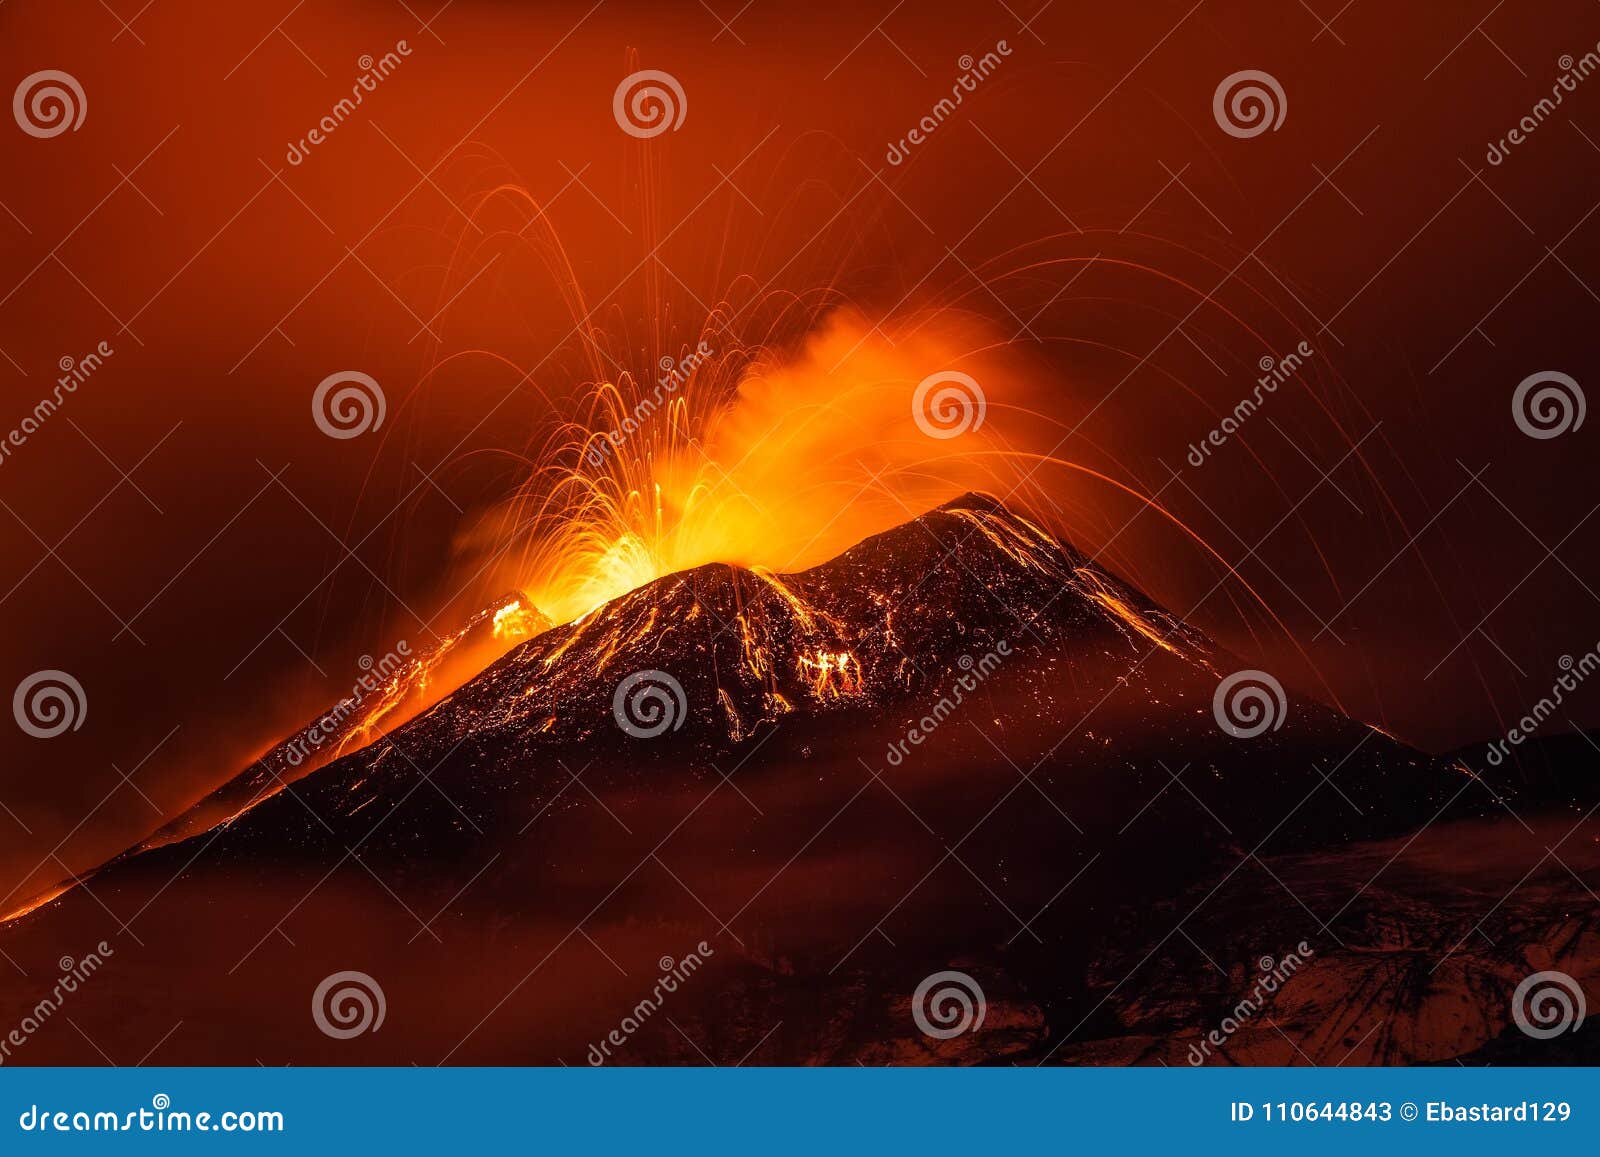 volcano eruption landscape at night - mount etna in sicily